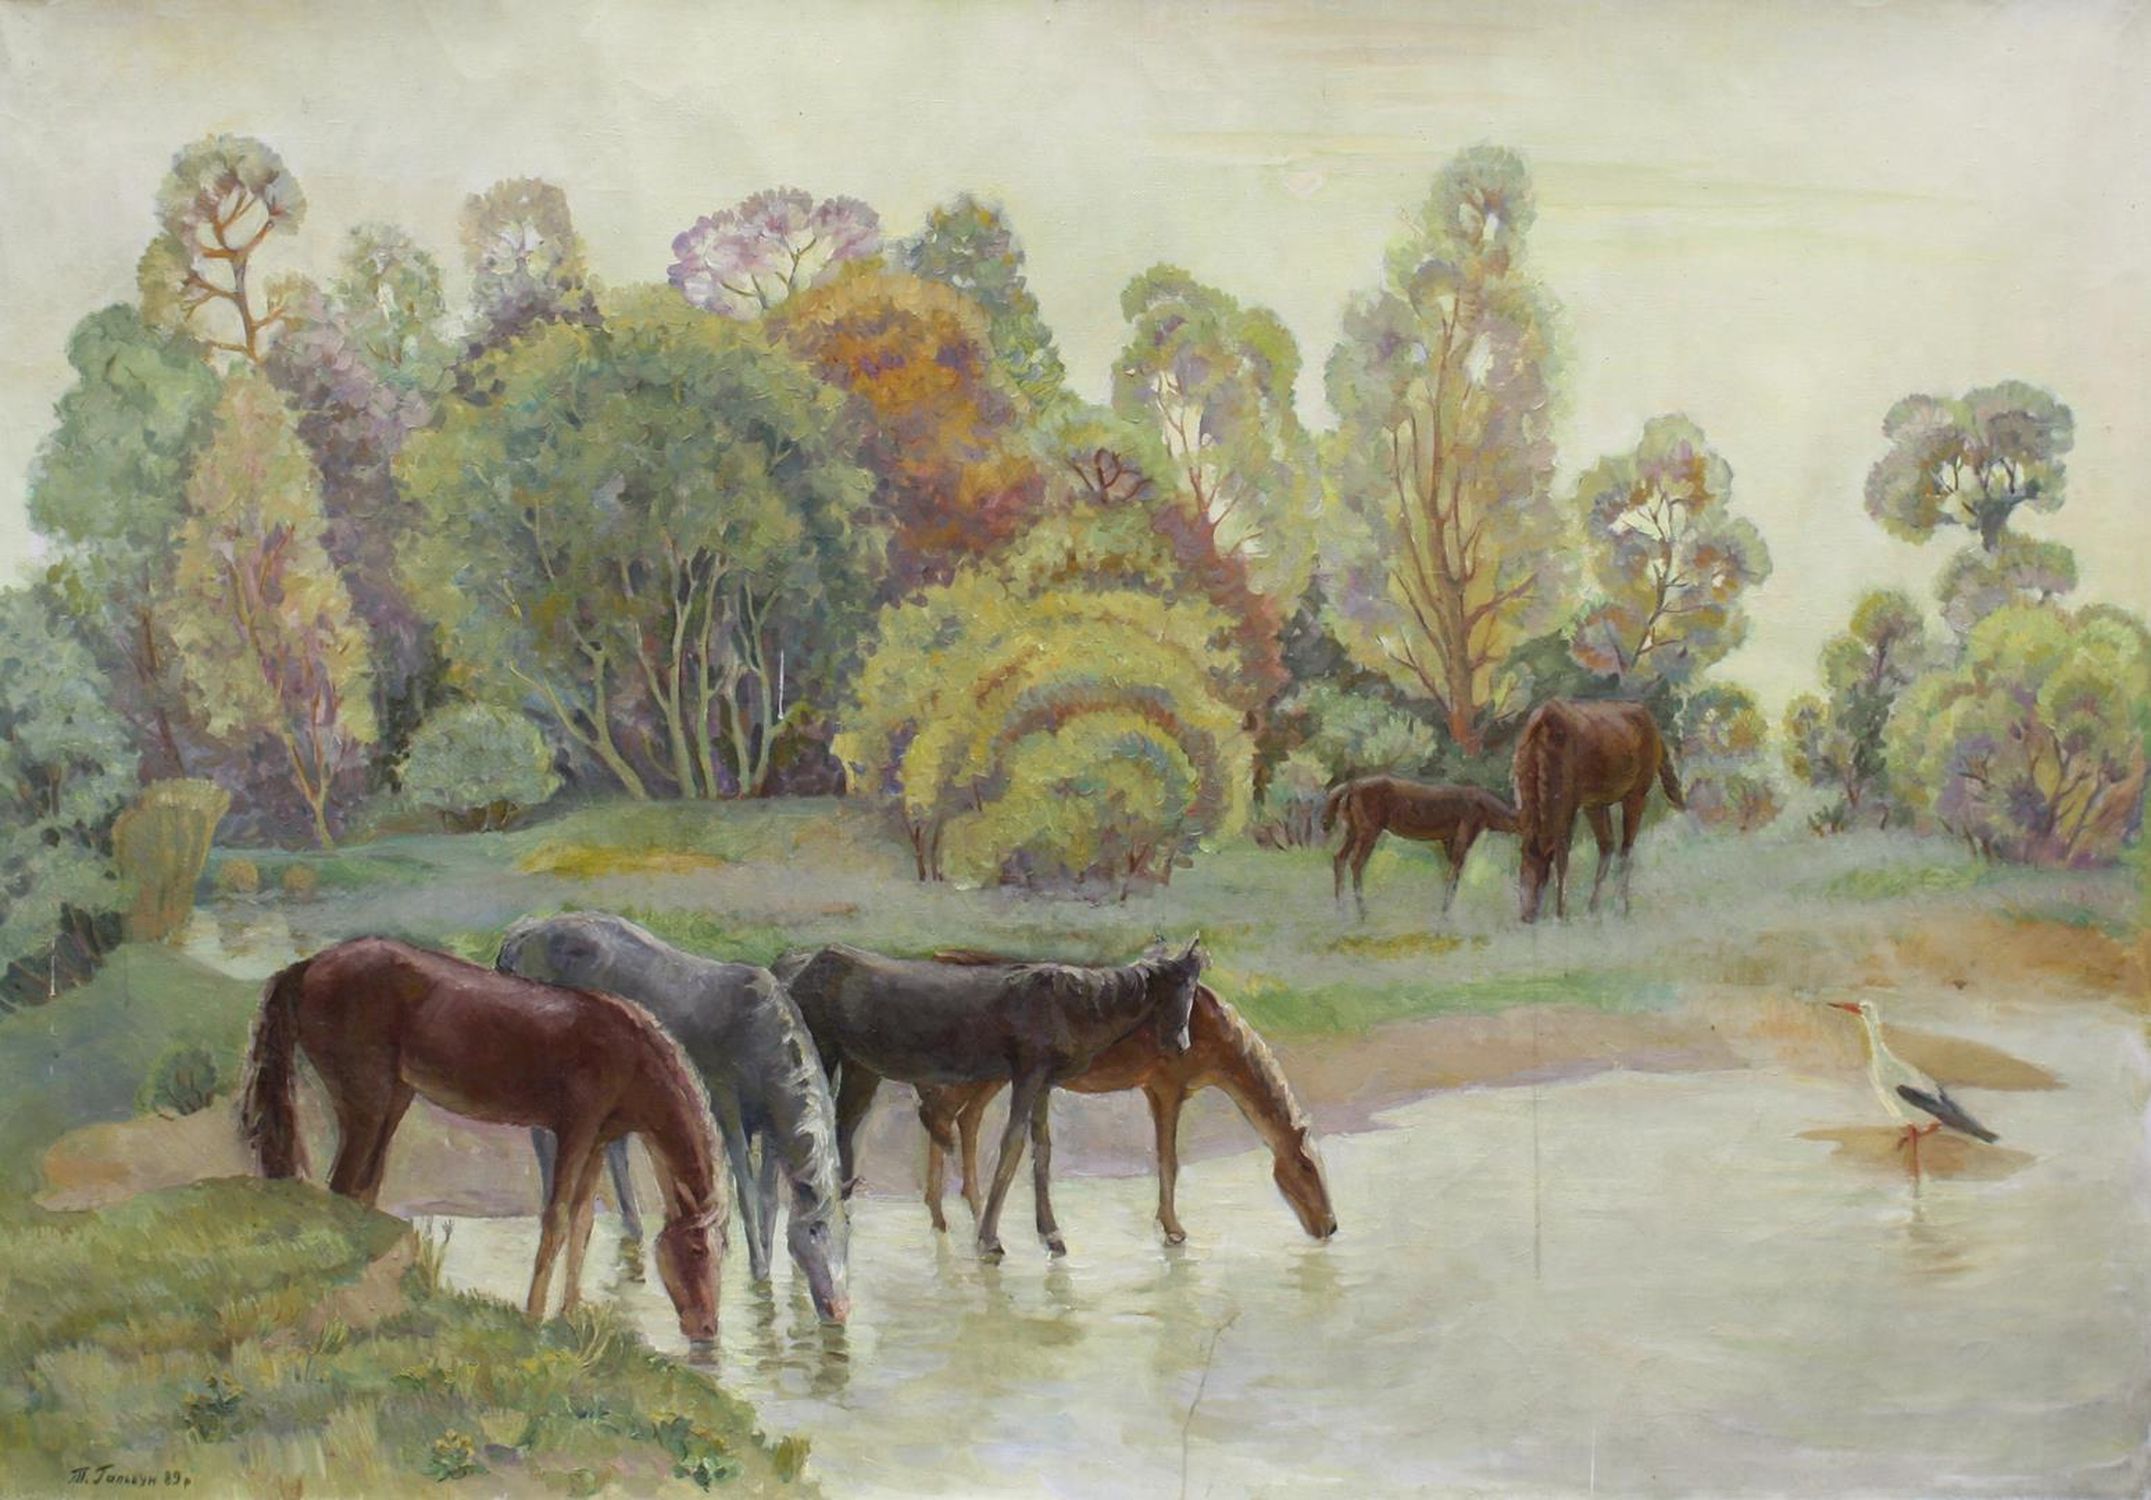 "Herd of horses"